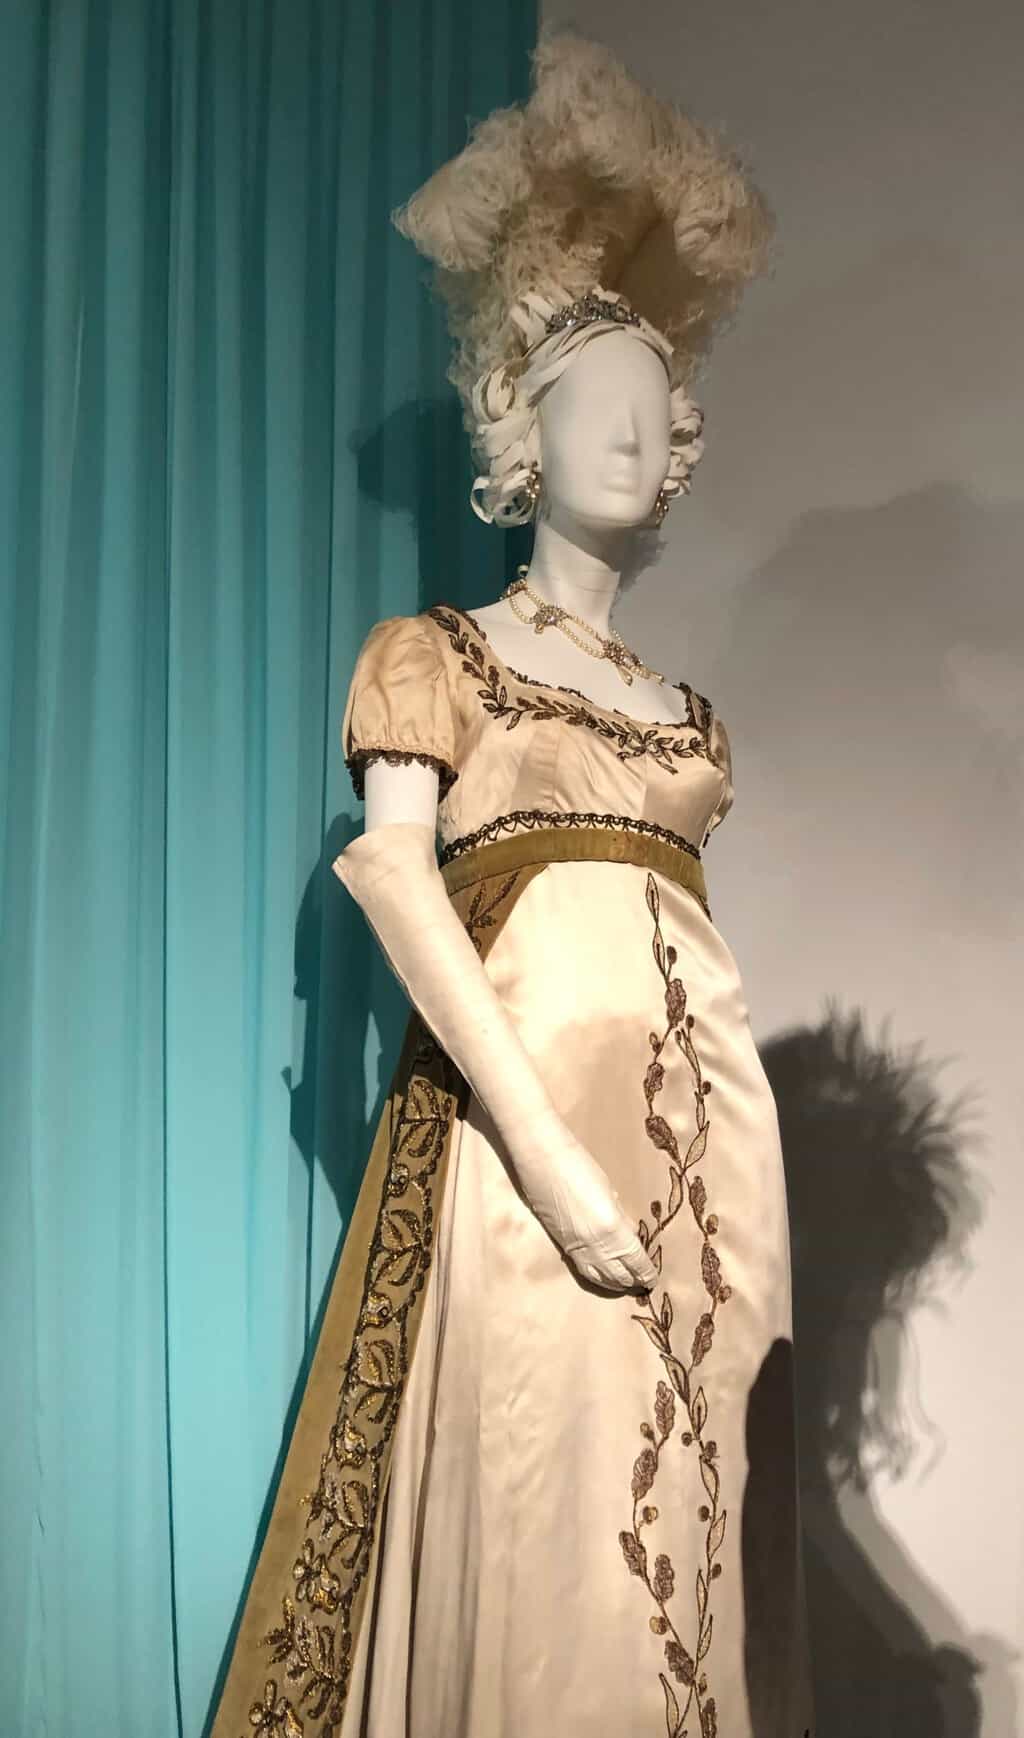 Vanity Fair costumes, FIDM exhibit 2019